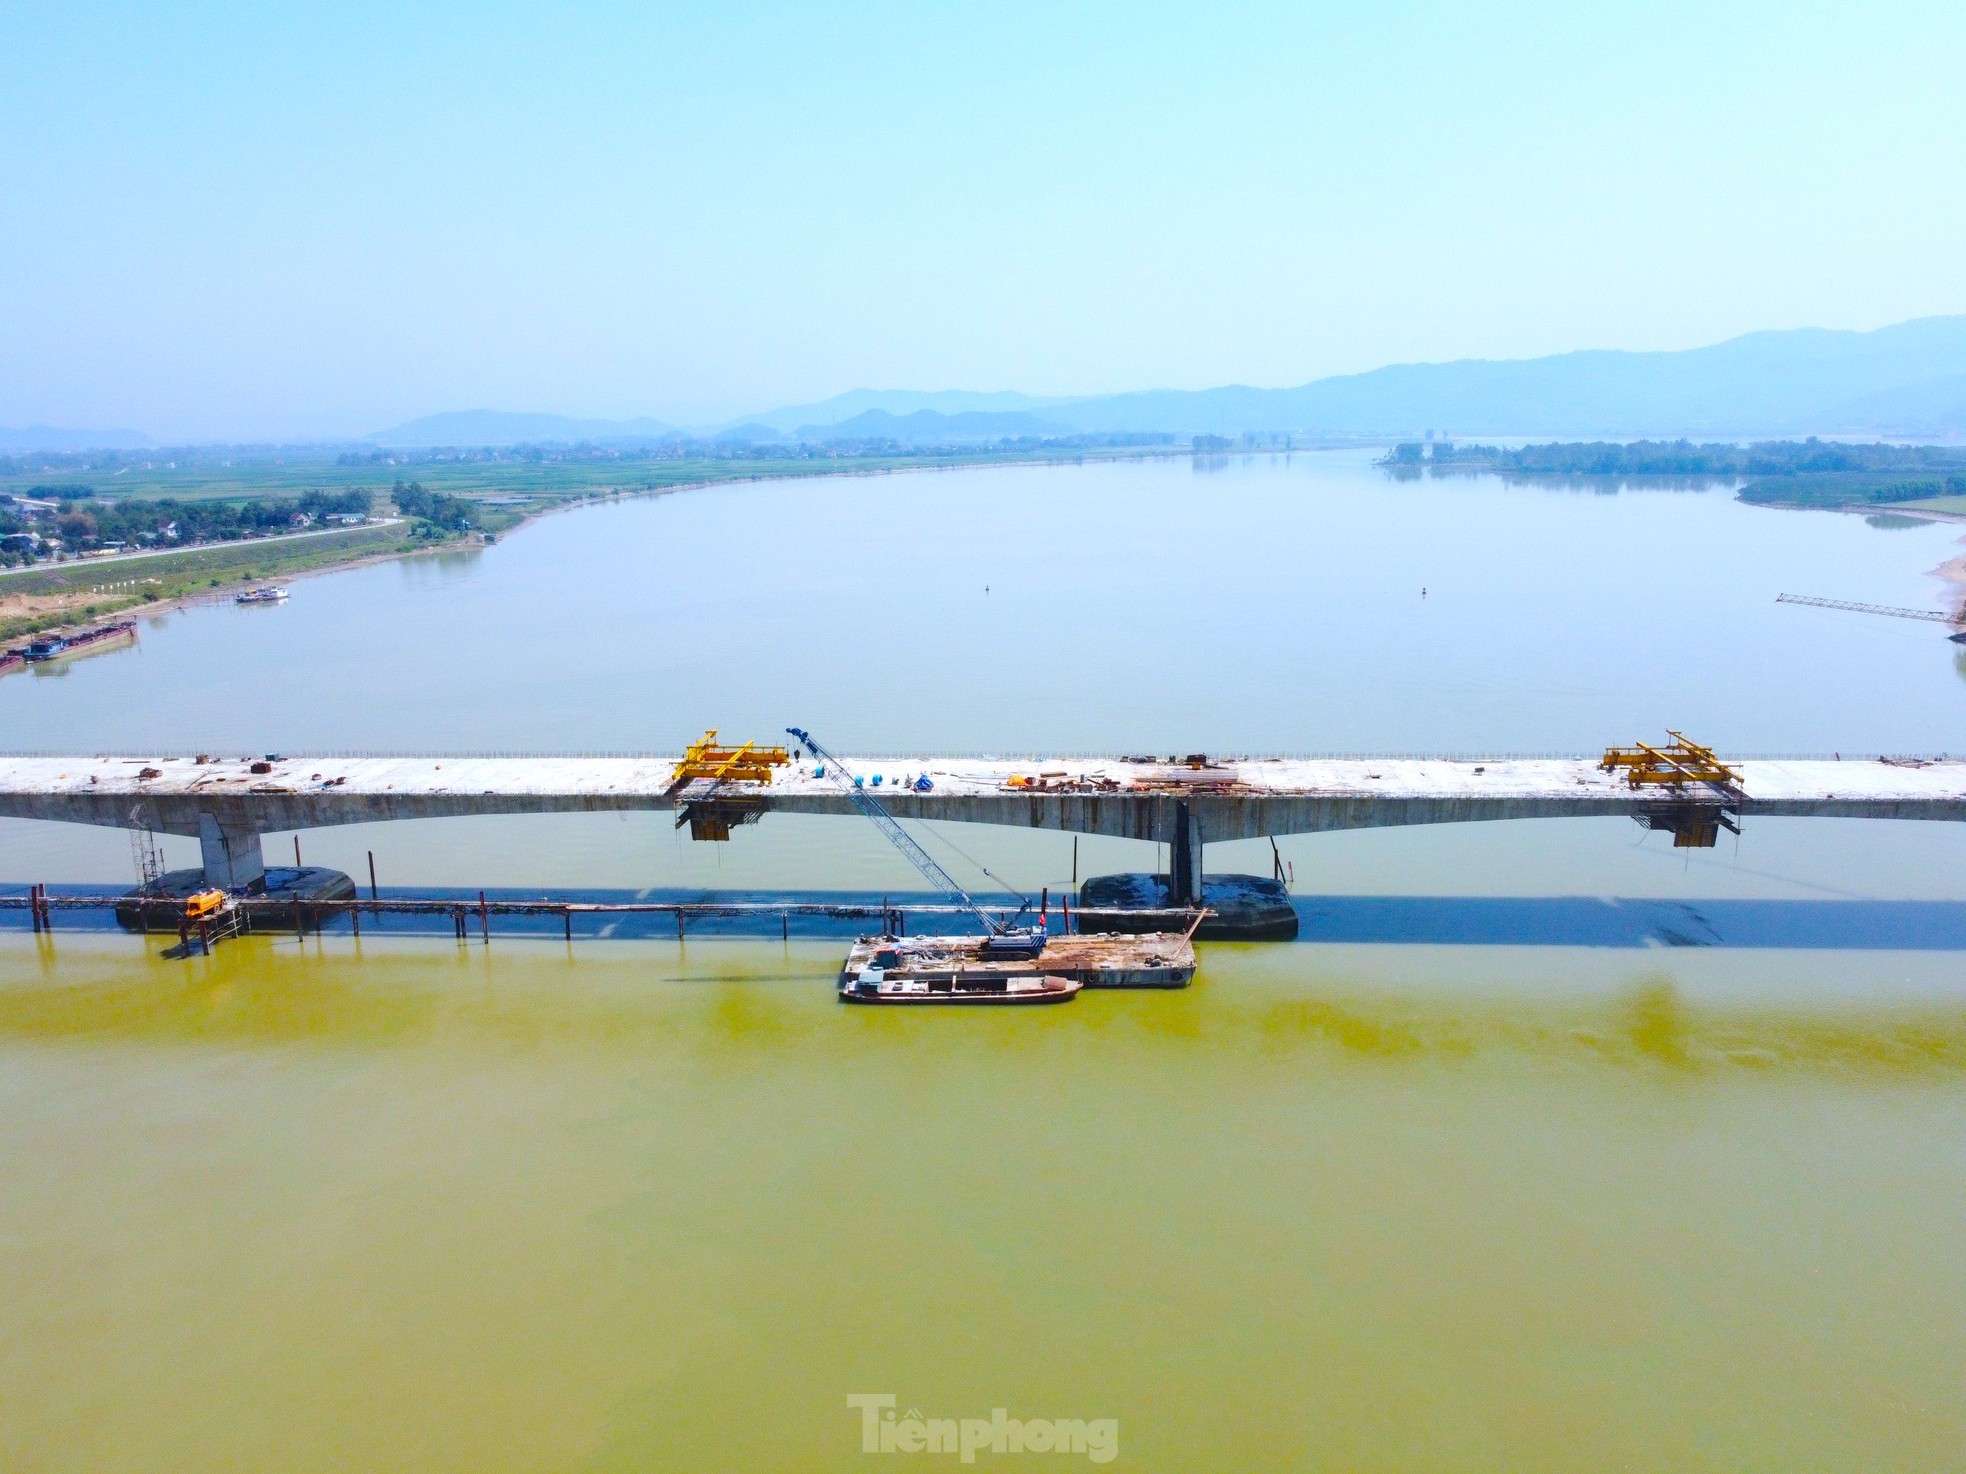 Cầu vượt sông nối 2 tỉnh Nghệ An và Hà Tĩnh trước ngày hợp long- Ảnh 8.